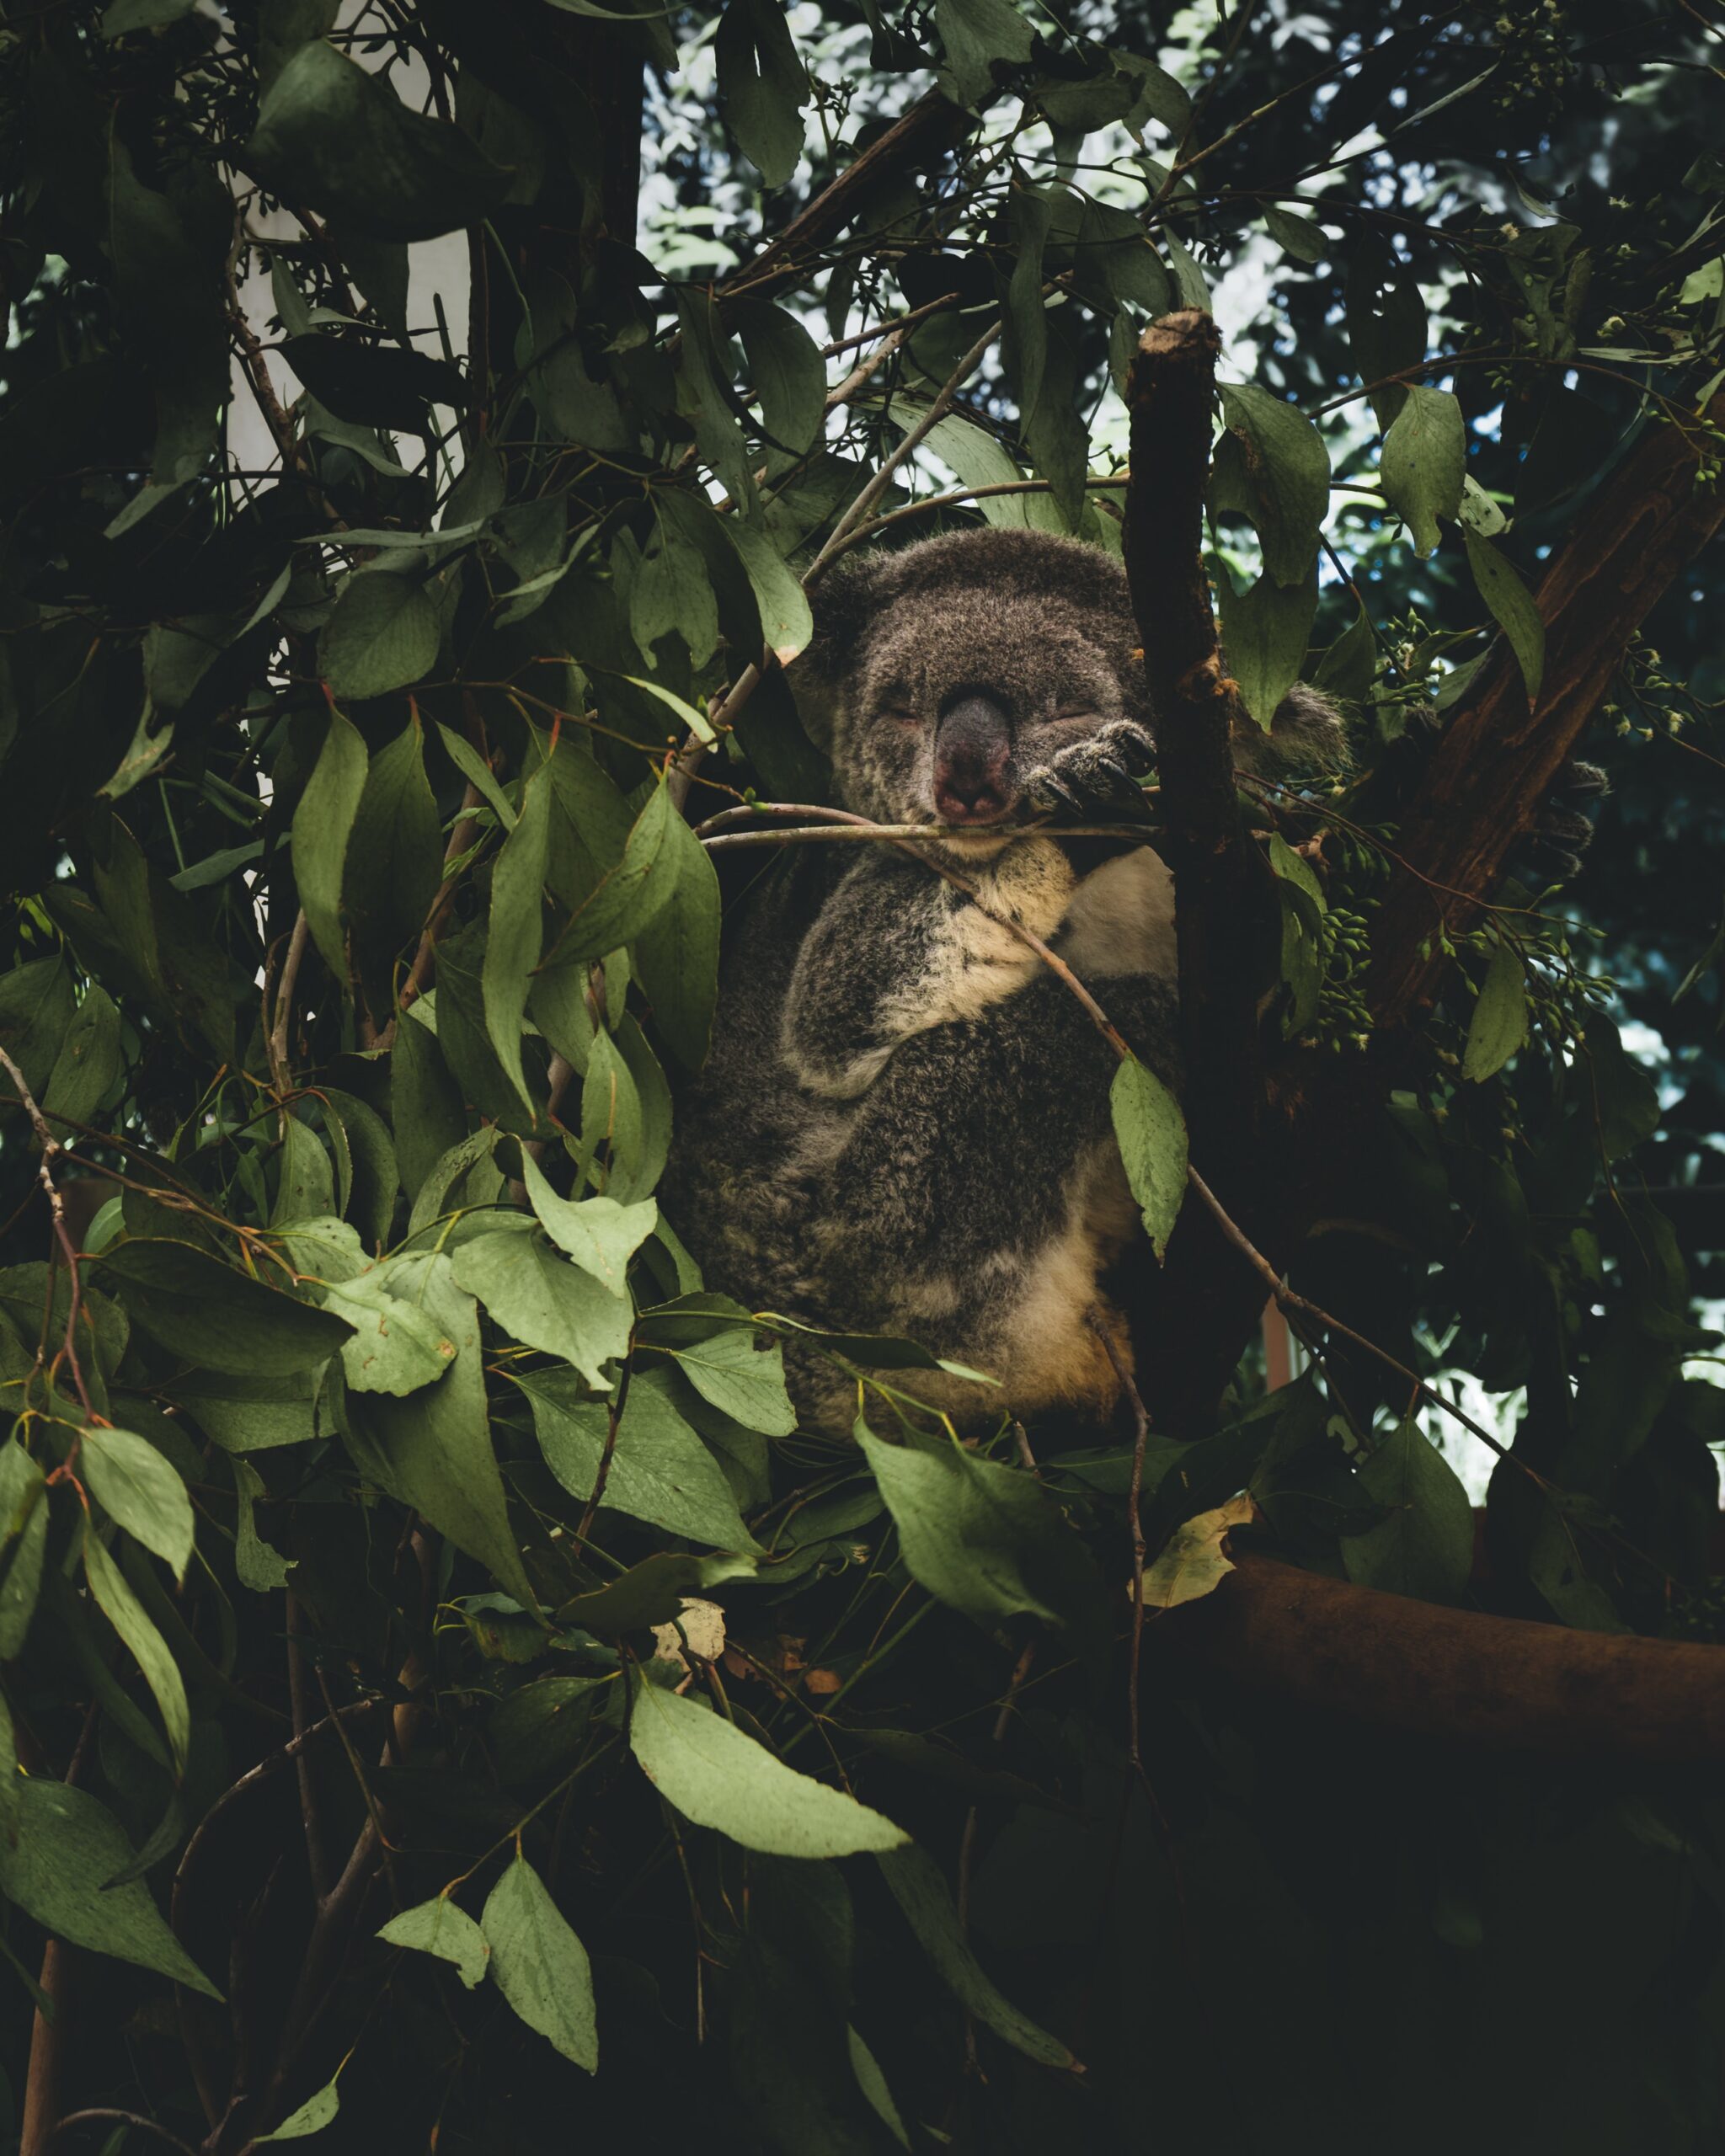 sloth sitting in tree nibbling leaves